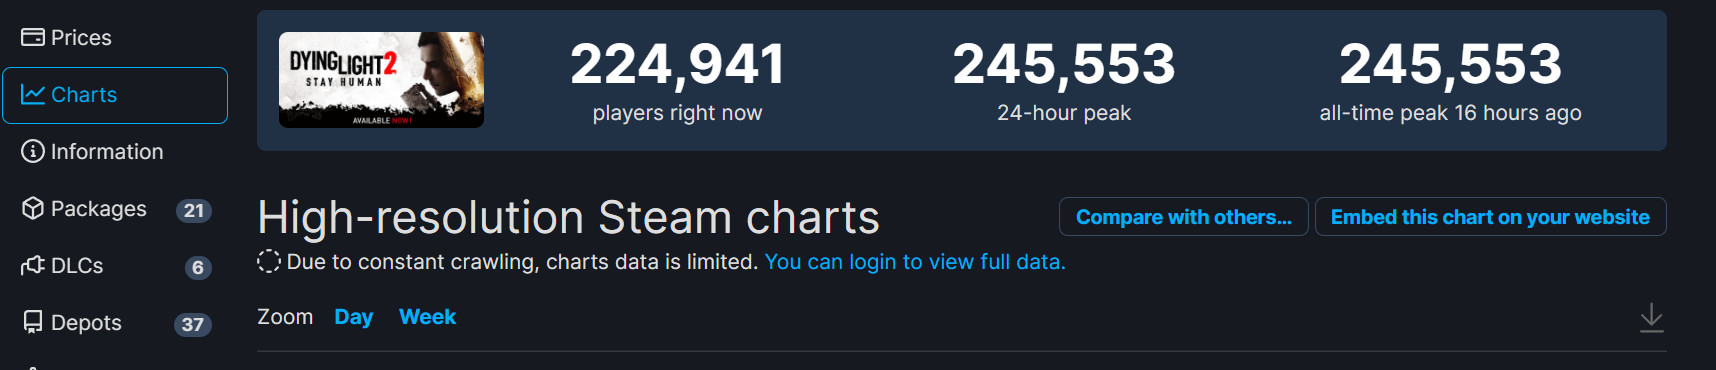 《垂死之光2》Steam峰值超24萬 是《惡靈古堡8》2倍